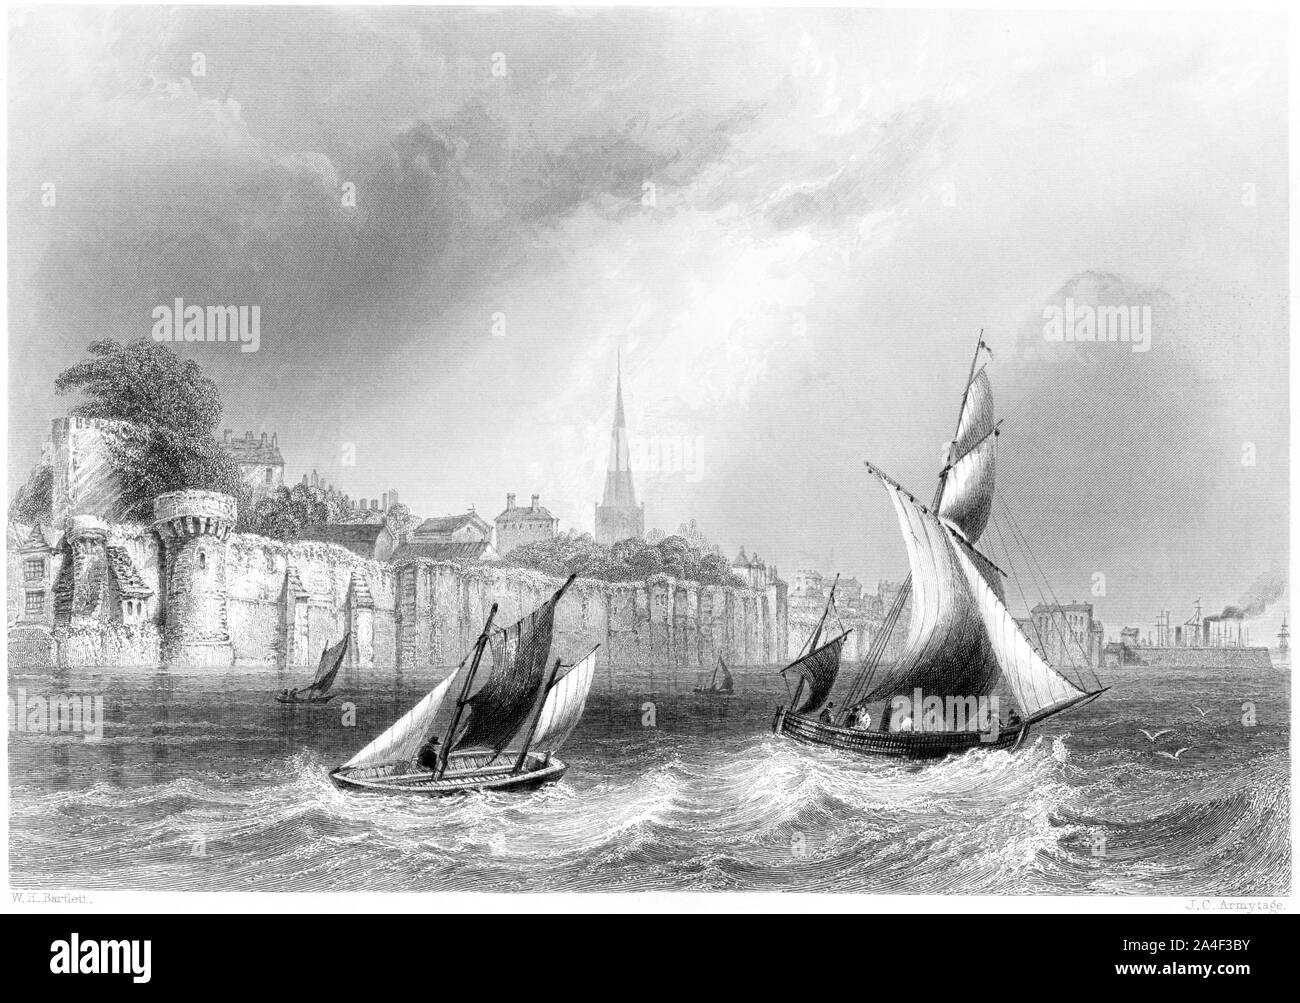 Eine Gravur der Wände von Southampton gescannt und in hoher Auflösung aus einem Buch im Jahre 1842 gedruckt. Glaubten copyright frei. Stockfoto